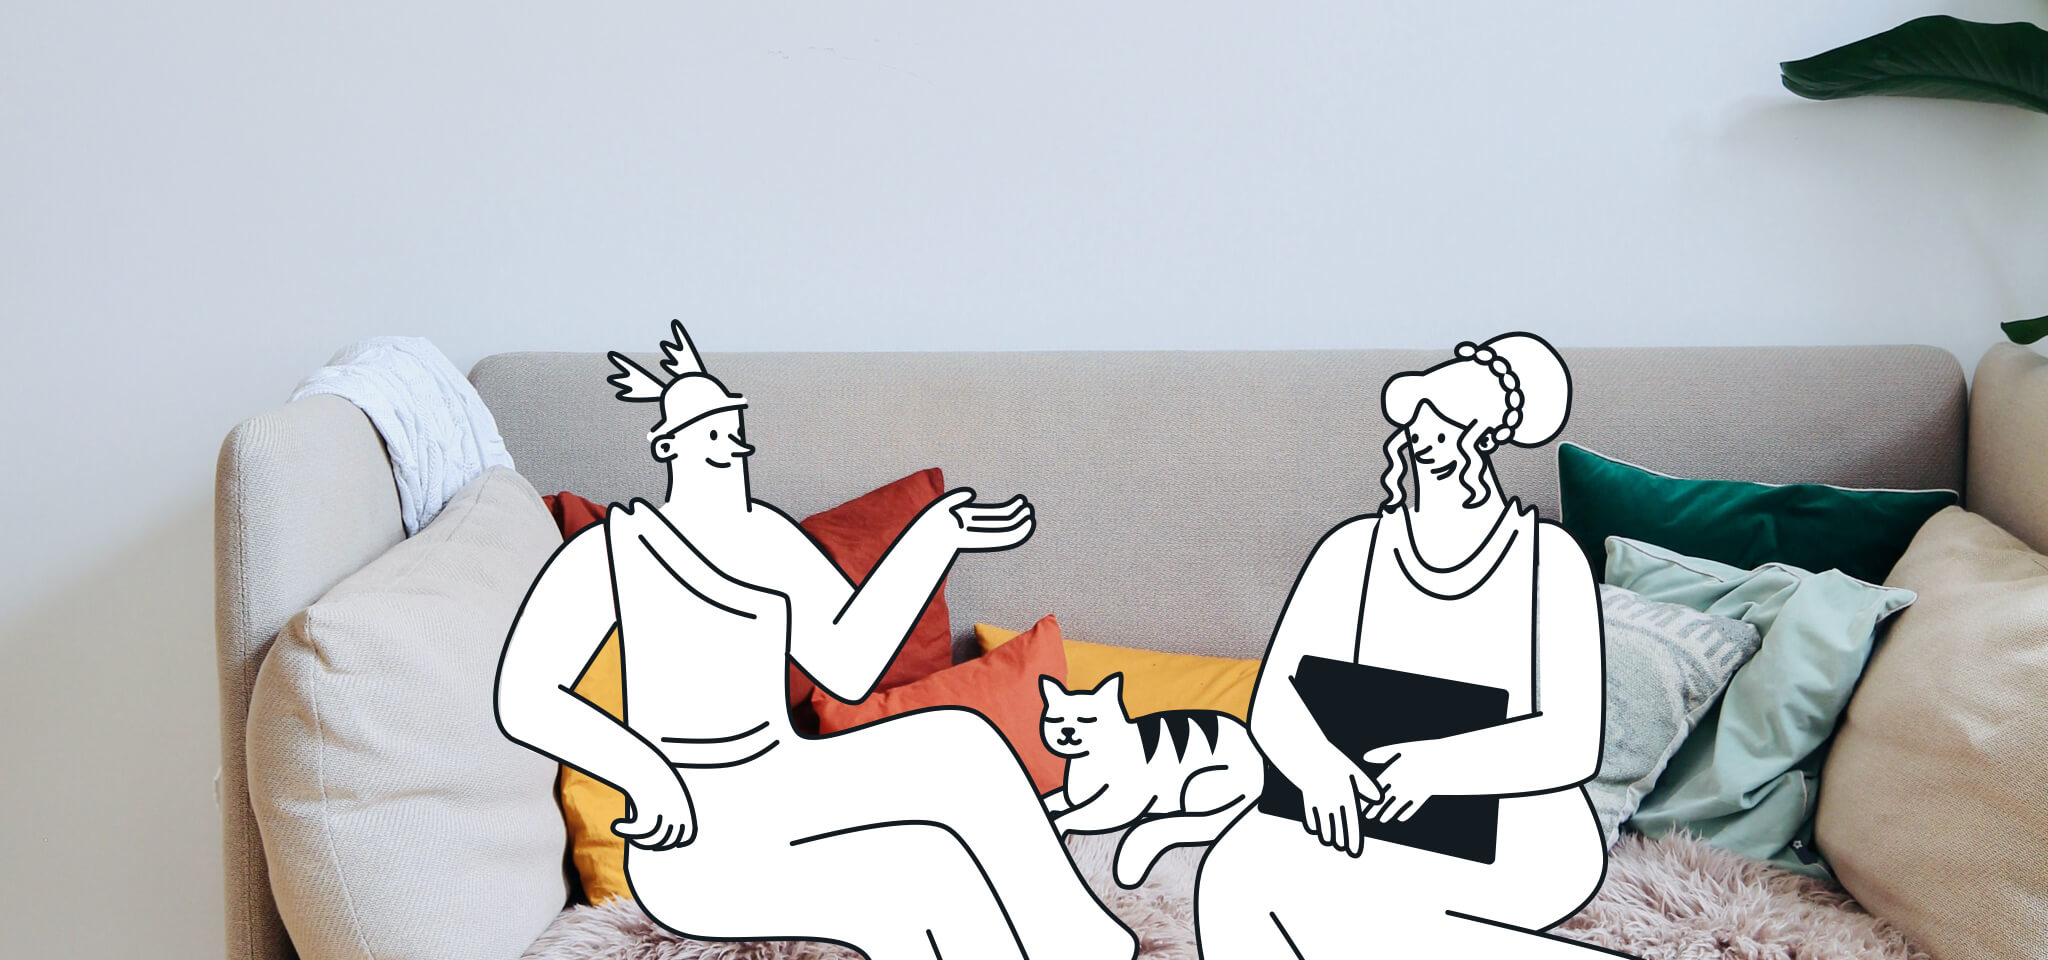 Héra et Hermès assis sur un canapé avec un chat